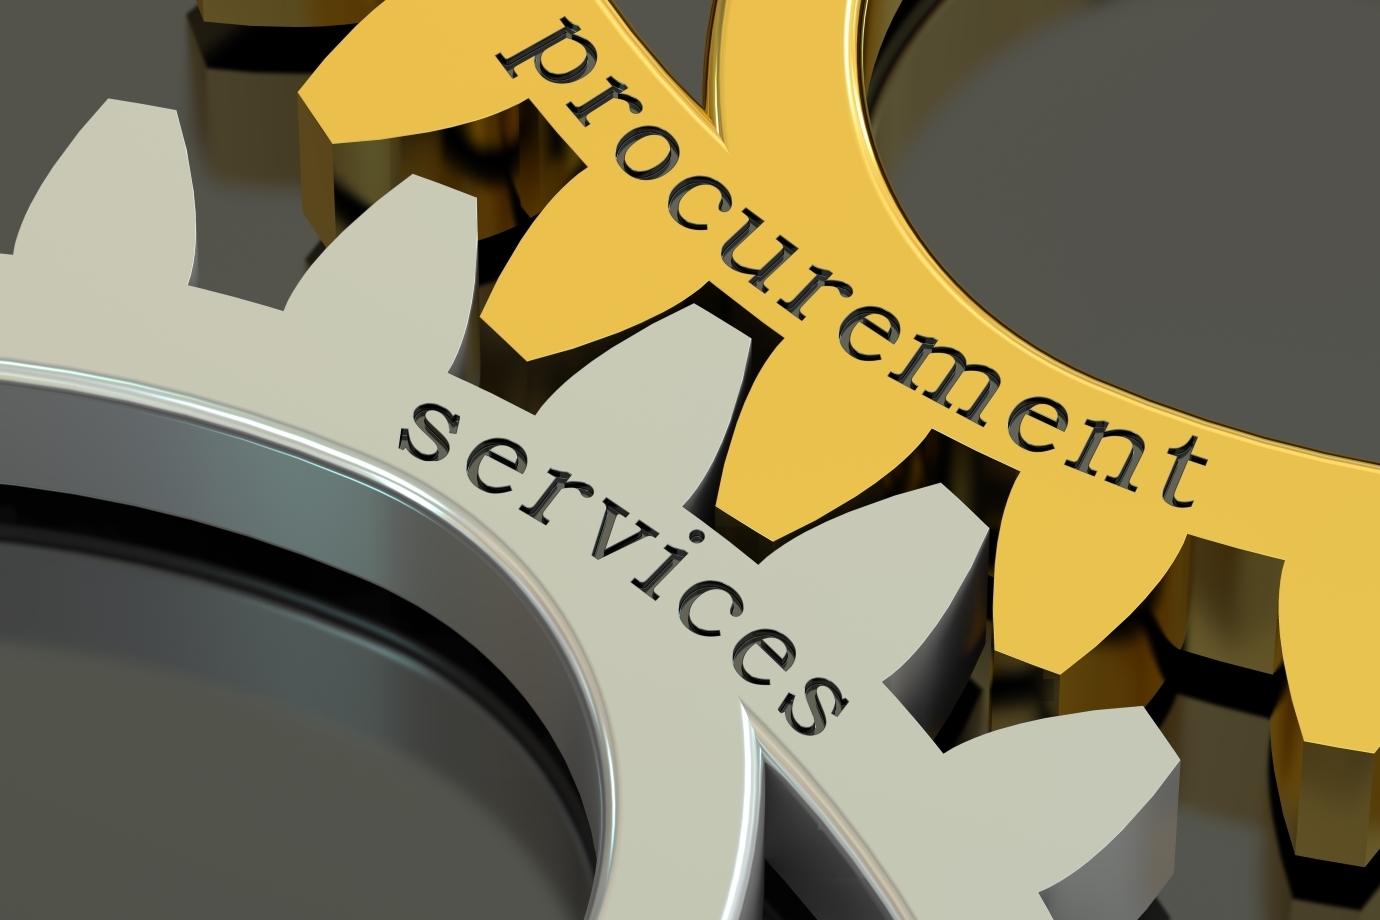 Procurement Services